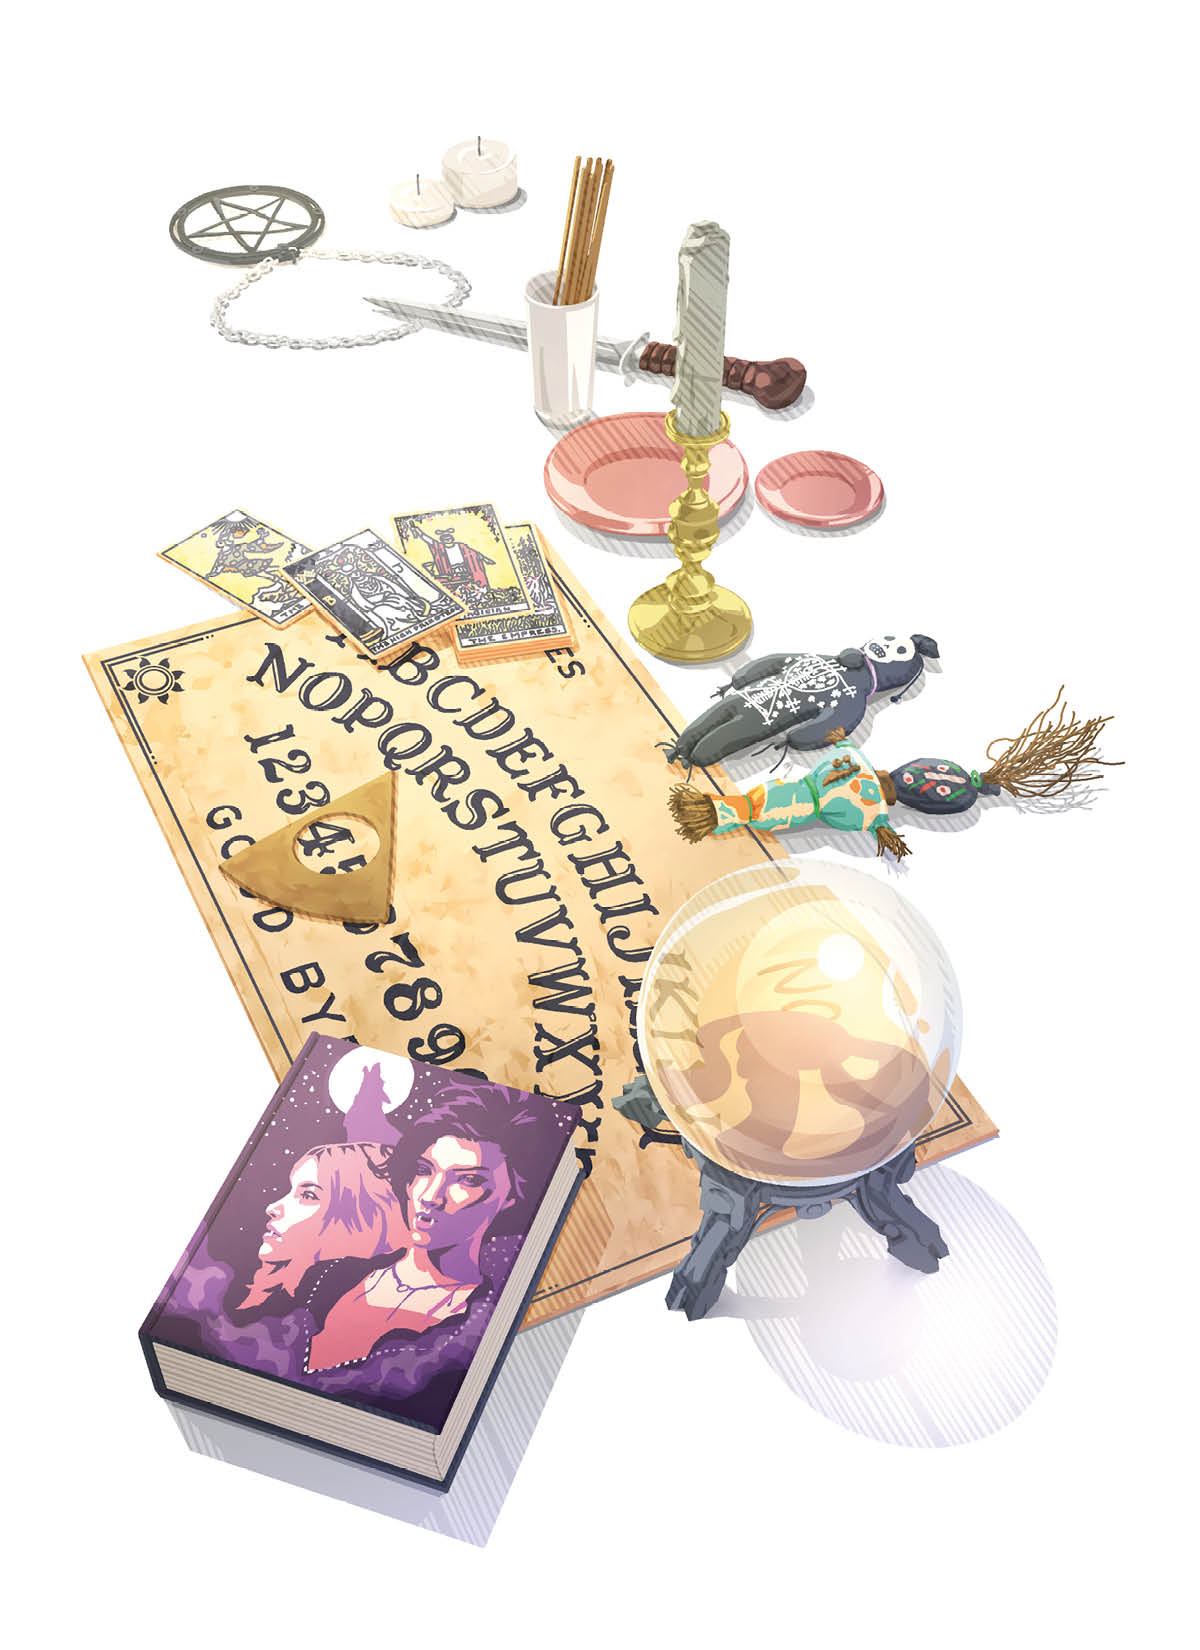 Varios objetos relacionados con el ocultismo y el espiritismo: tabla en la que la gente busca mensajes del más allá, bola de cristal, libro sobre vampiros, cartas del tarot, muñecos de vudú, incienso, amuletos, fetiches y otros.